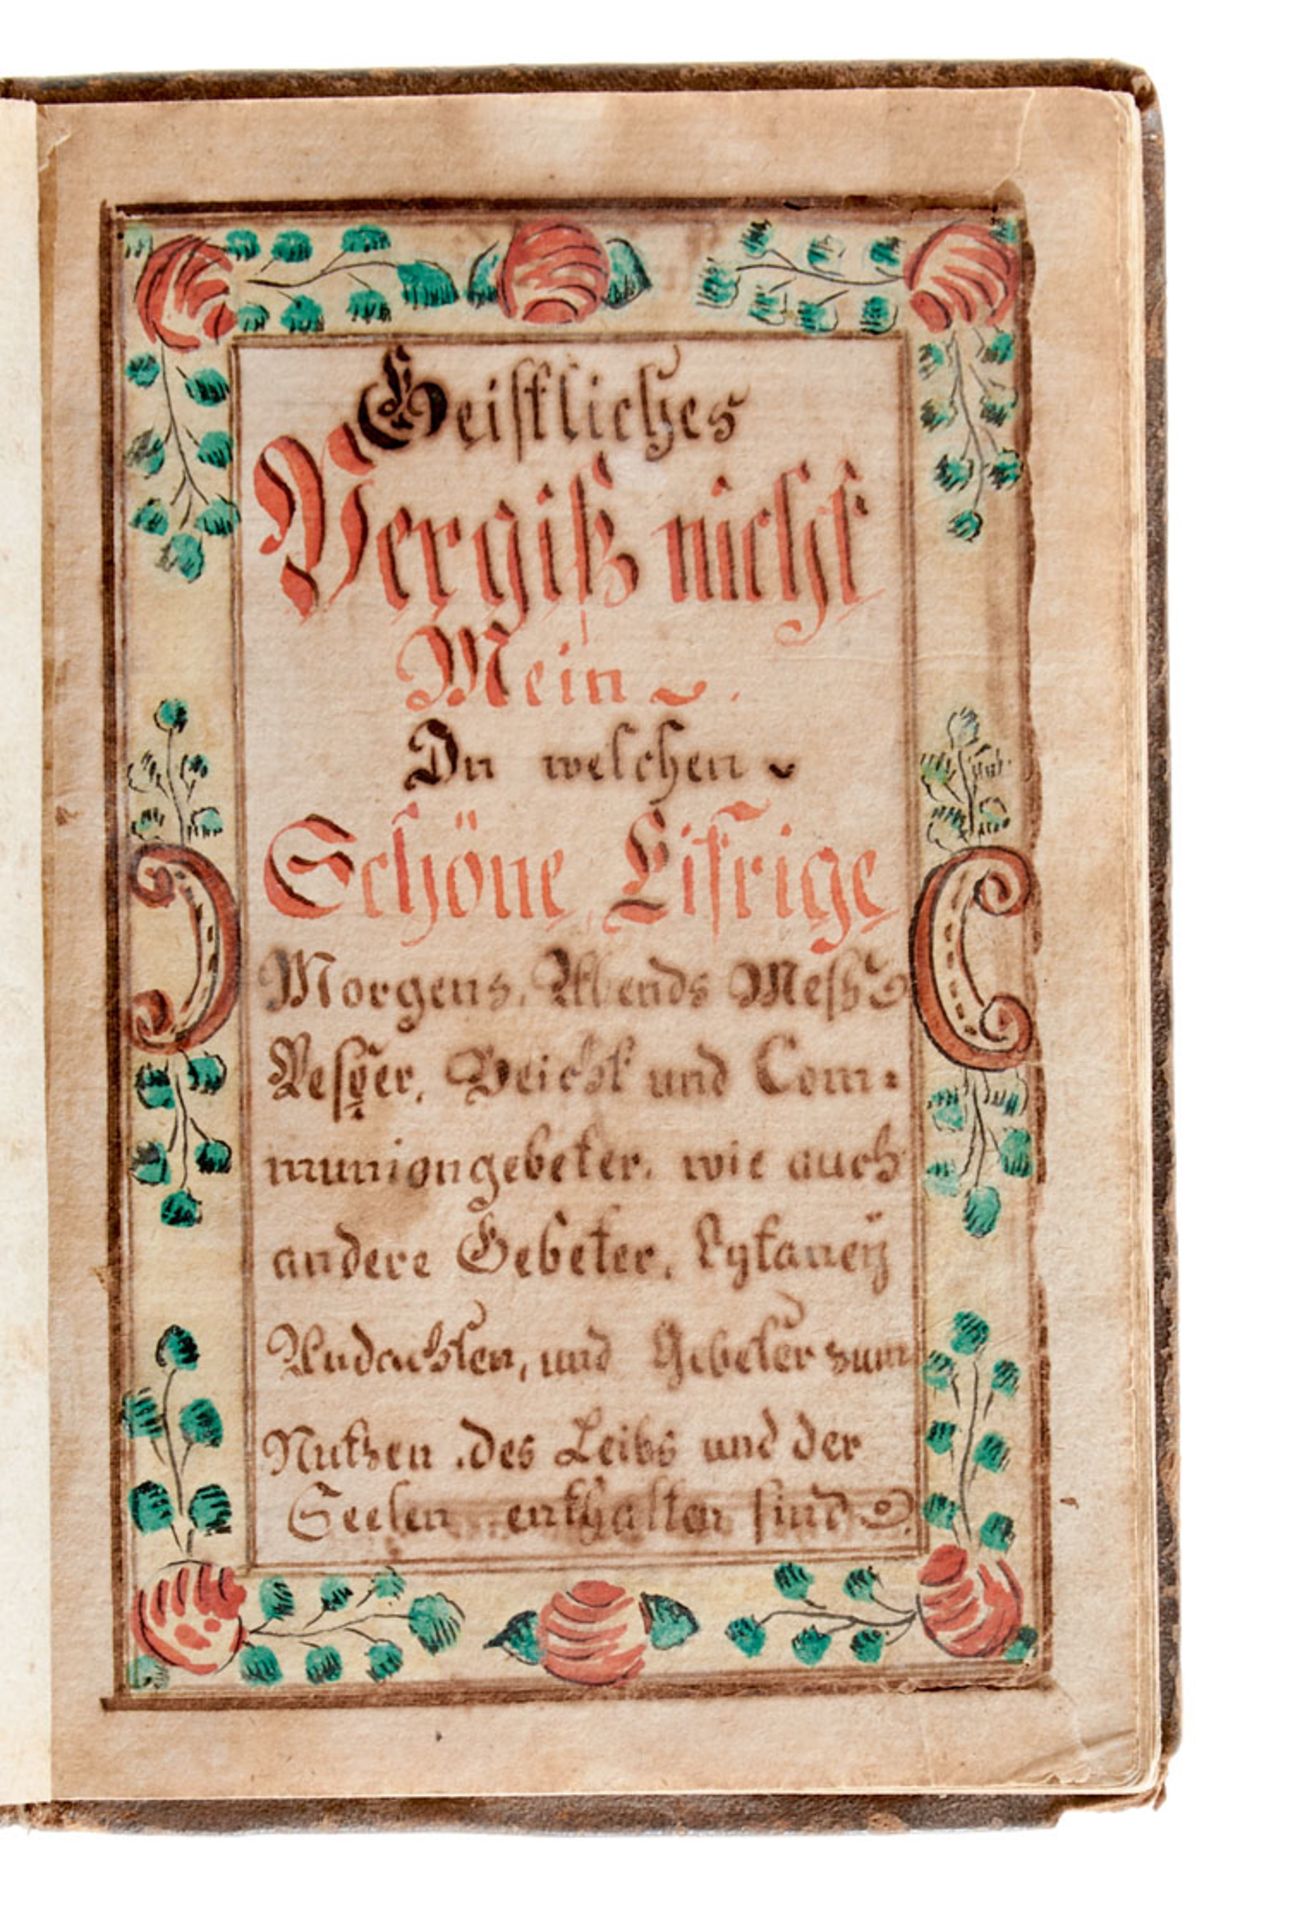 Gebetbuch - "Geistliches Vergiß nicht Mein". Deutsche Handschrift auf Papier. - Image 2 of 4